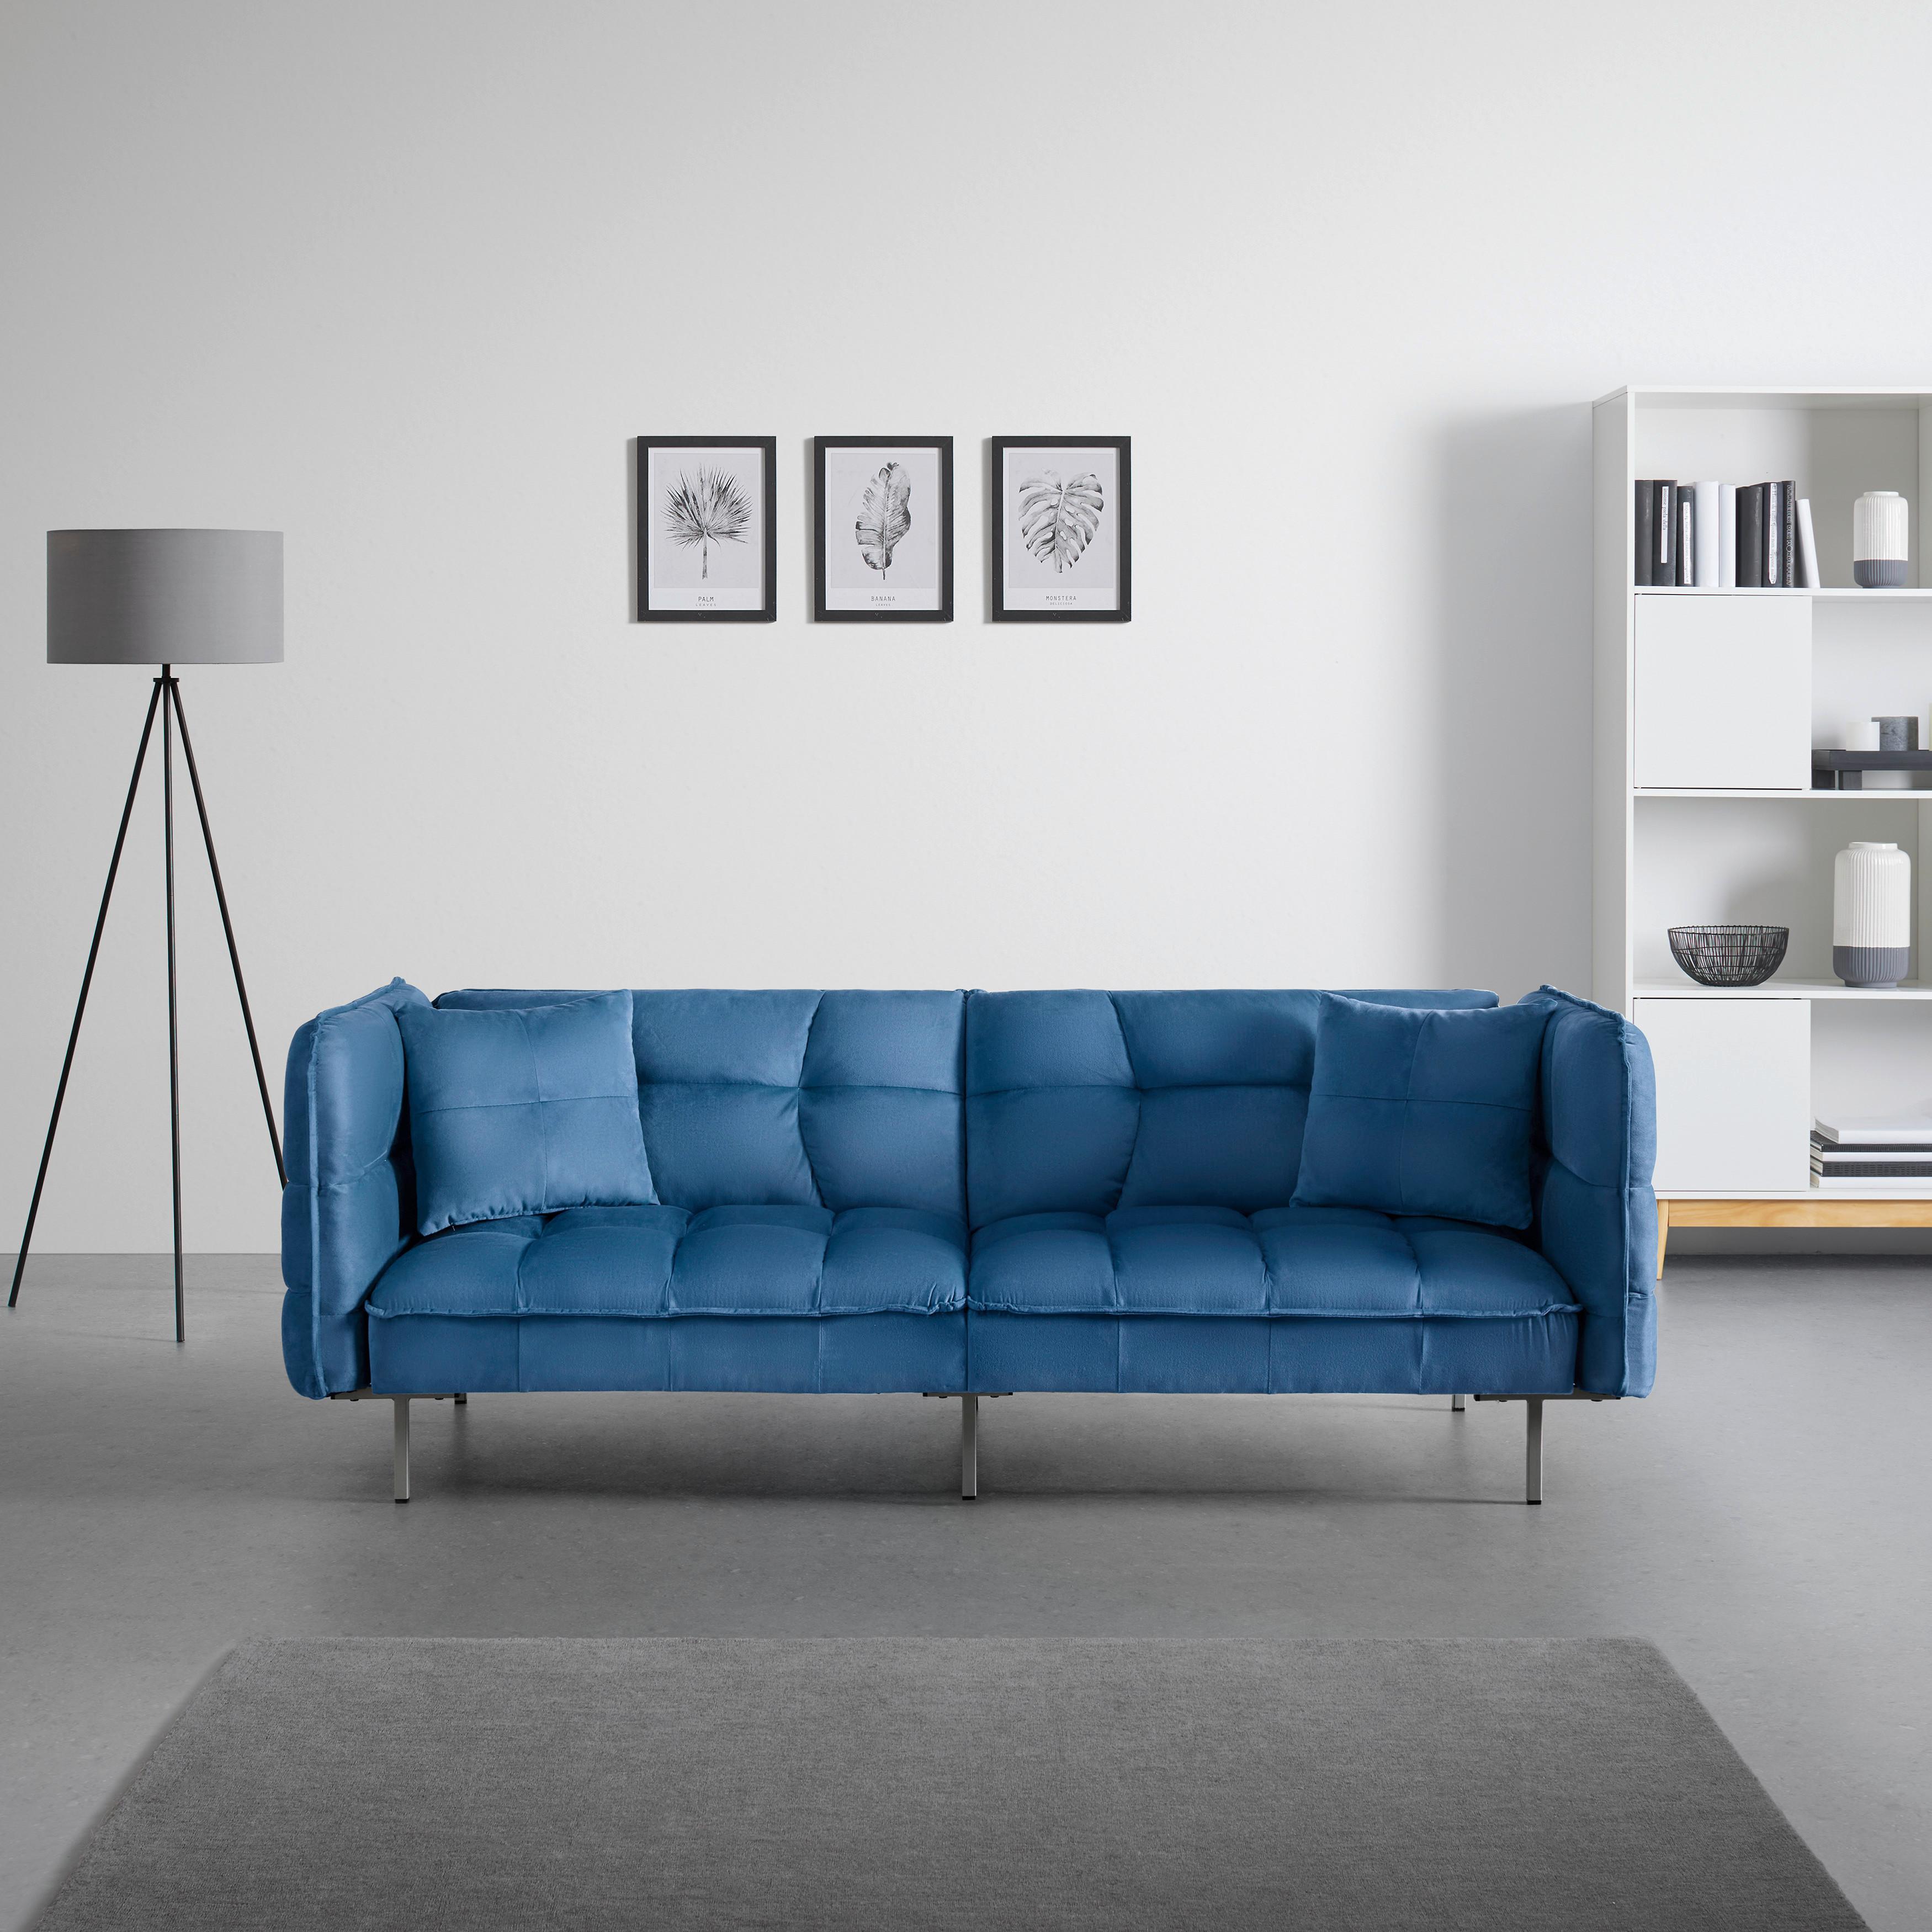 Schlafsofa blau, "Nelly", Samt - Blau/Silberfarben, MODERN, Holz/Textil (208/78/76,5cm) - Bessagi Home